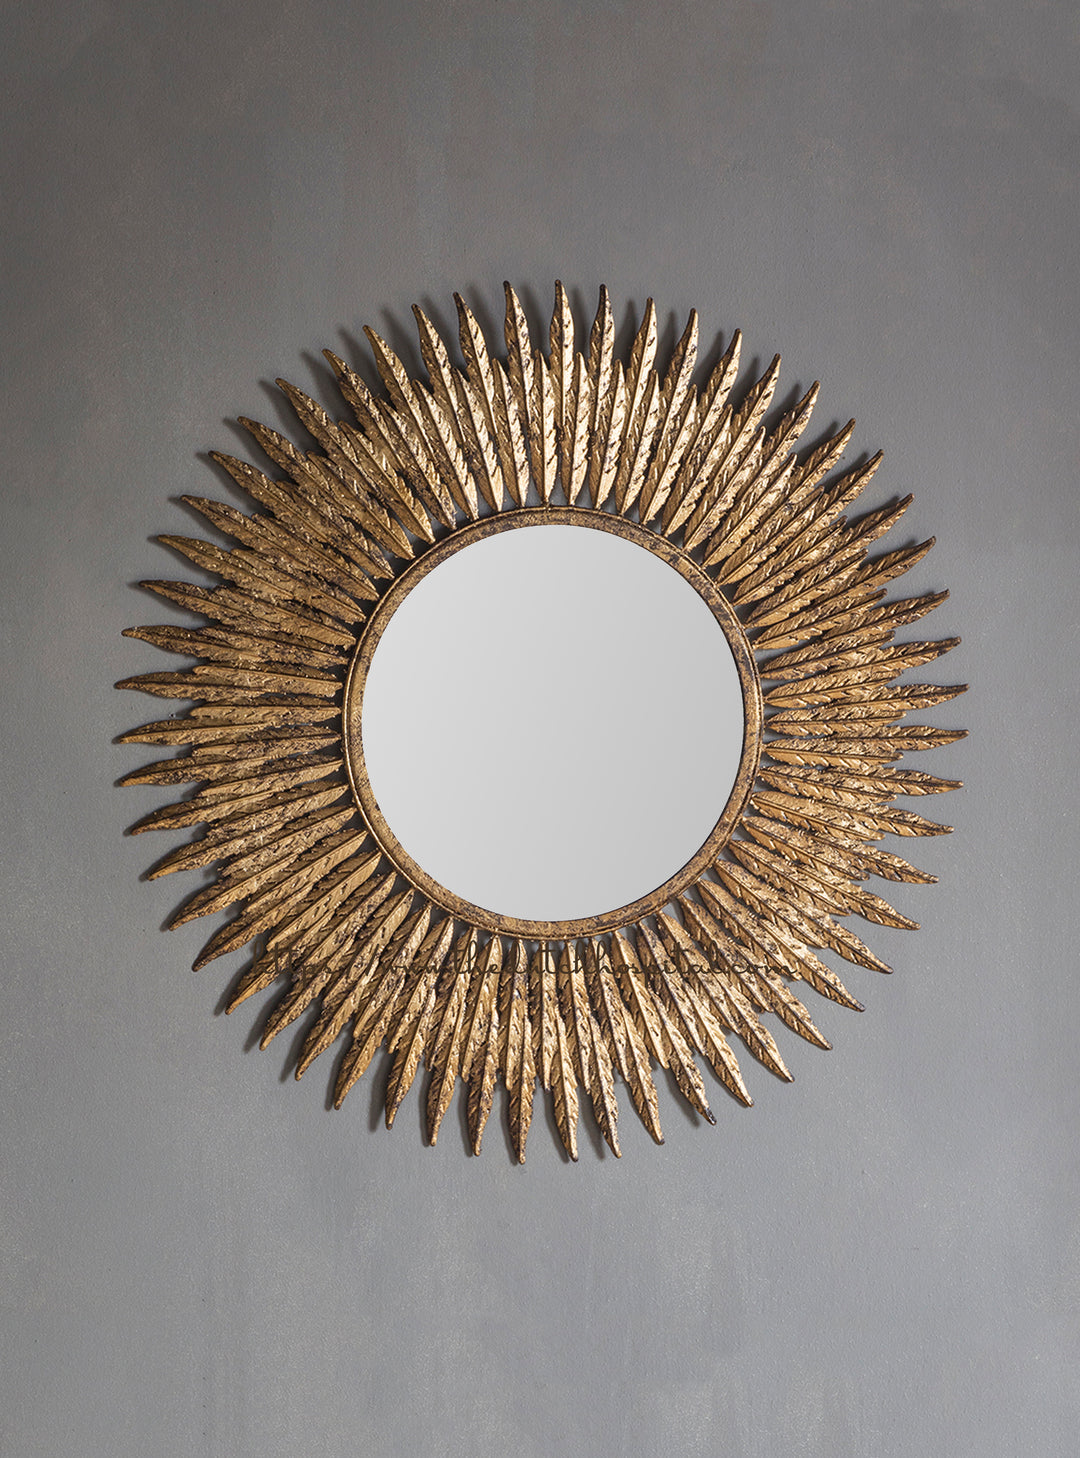 Feathers Mirror, Starburst Wall Mirror, Metallic Sunburst Mirror